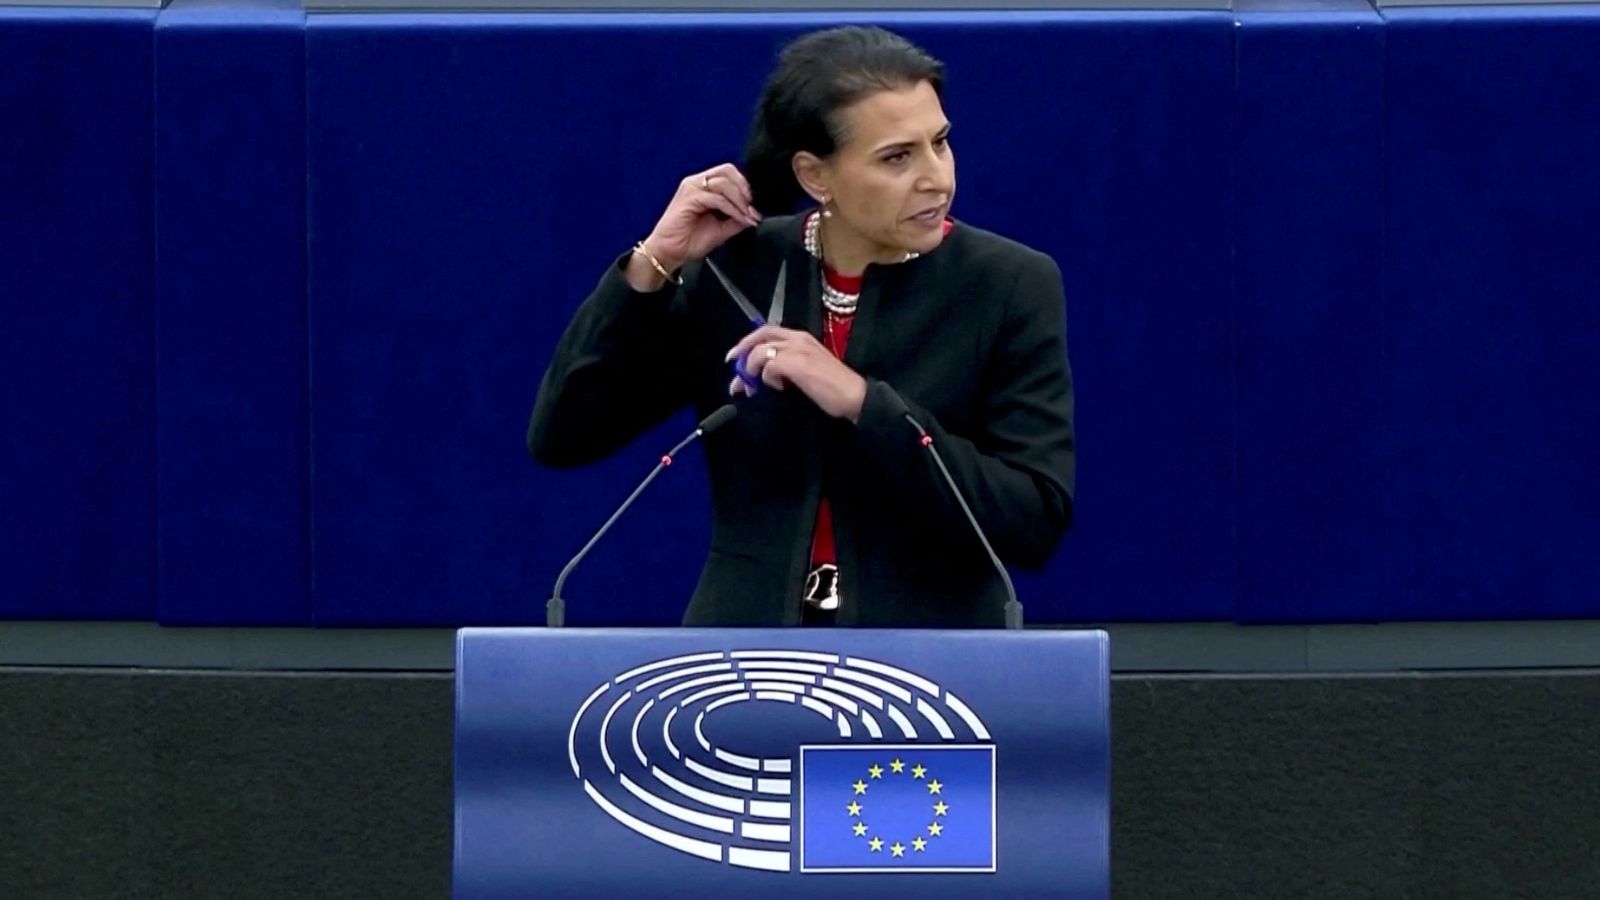 Szwedzka eurodeputowana obcięła włosy podczas przemówienia w Parlamencie Europejskim w solidarności z irańskimi kobietami po śmierci Mahsy Amini |  wiadomości ze świata